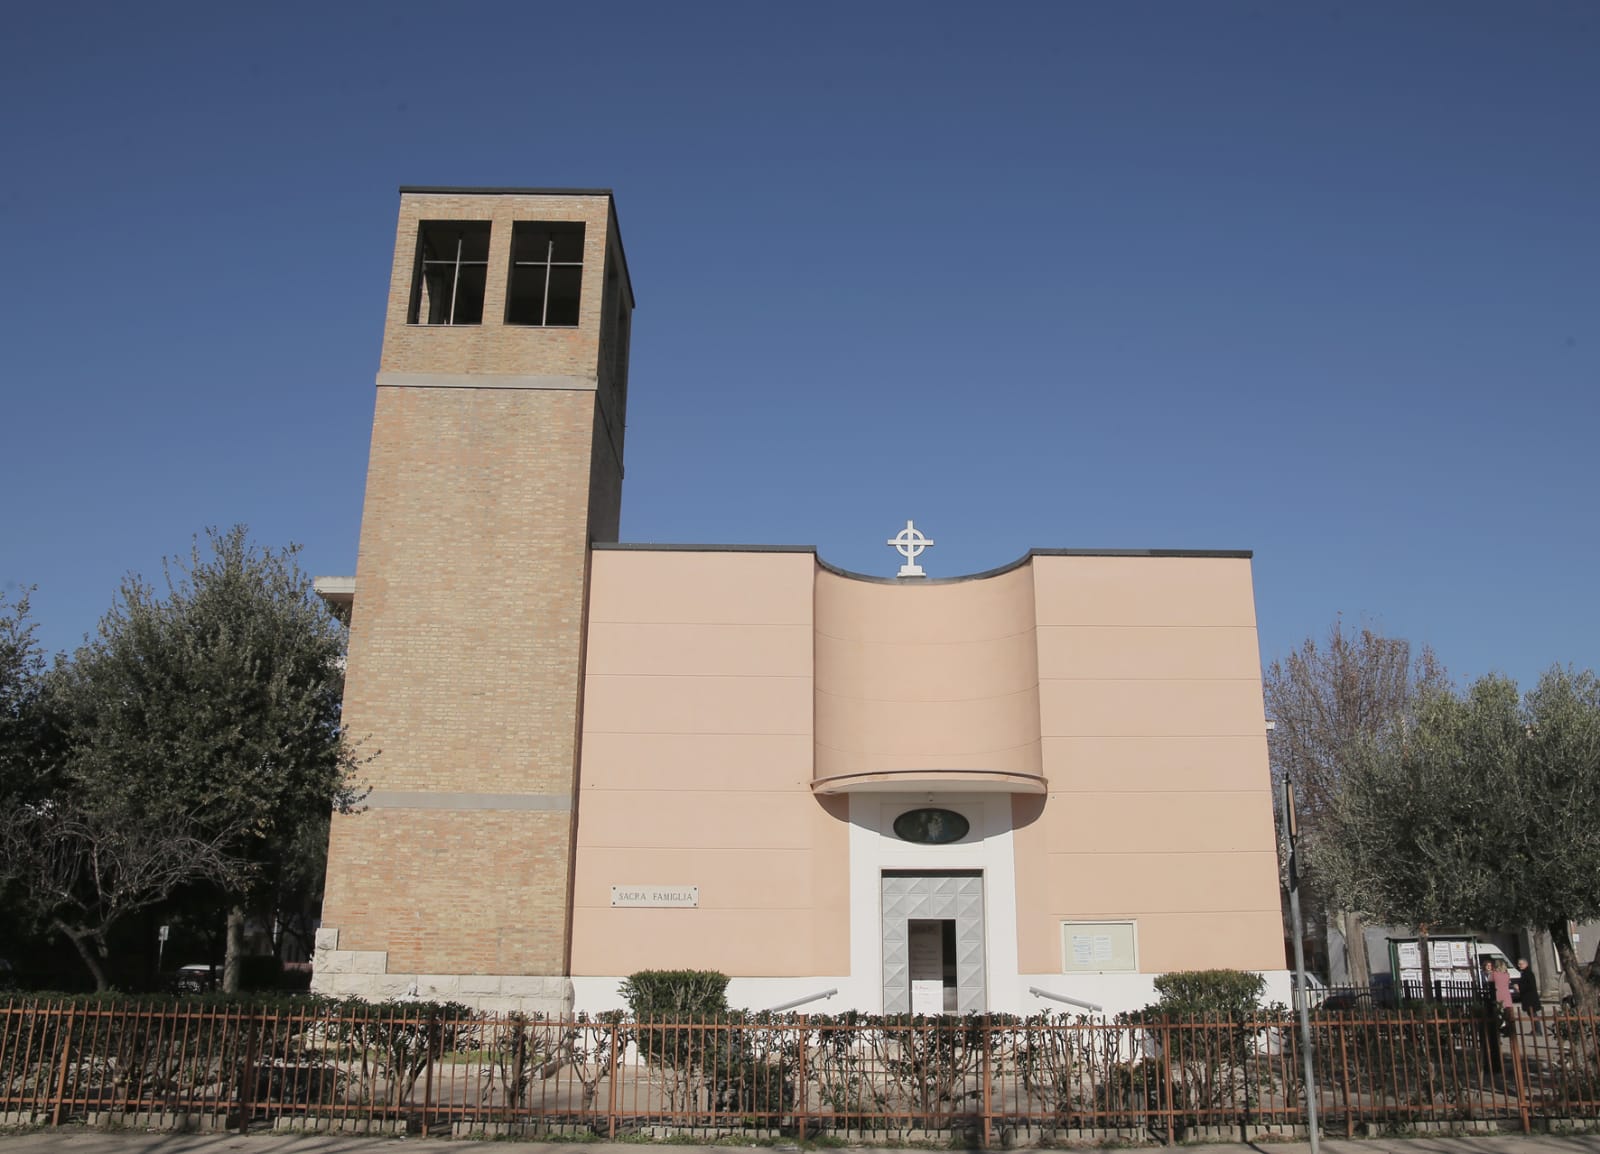 60 anni di fede e di comunità per la parrocchia Sacra Famiglia di Foggia